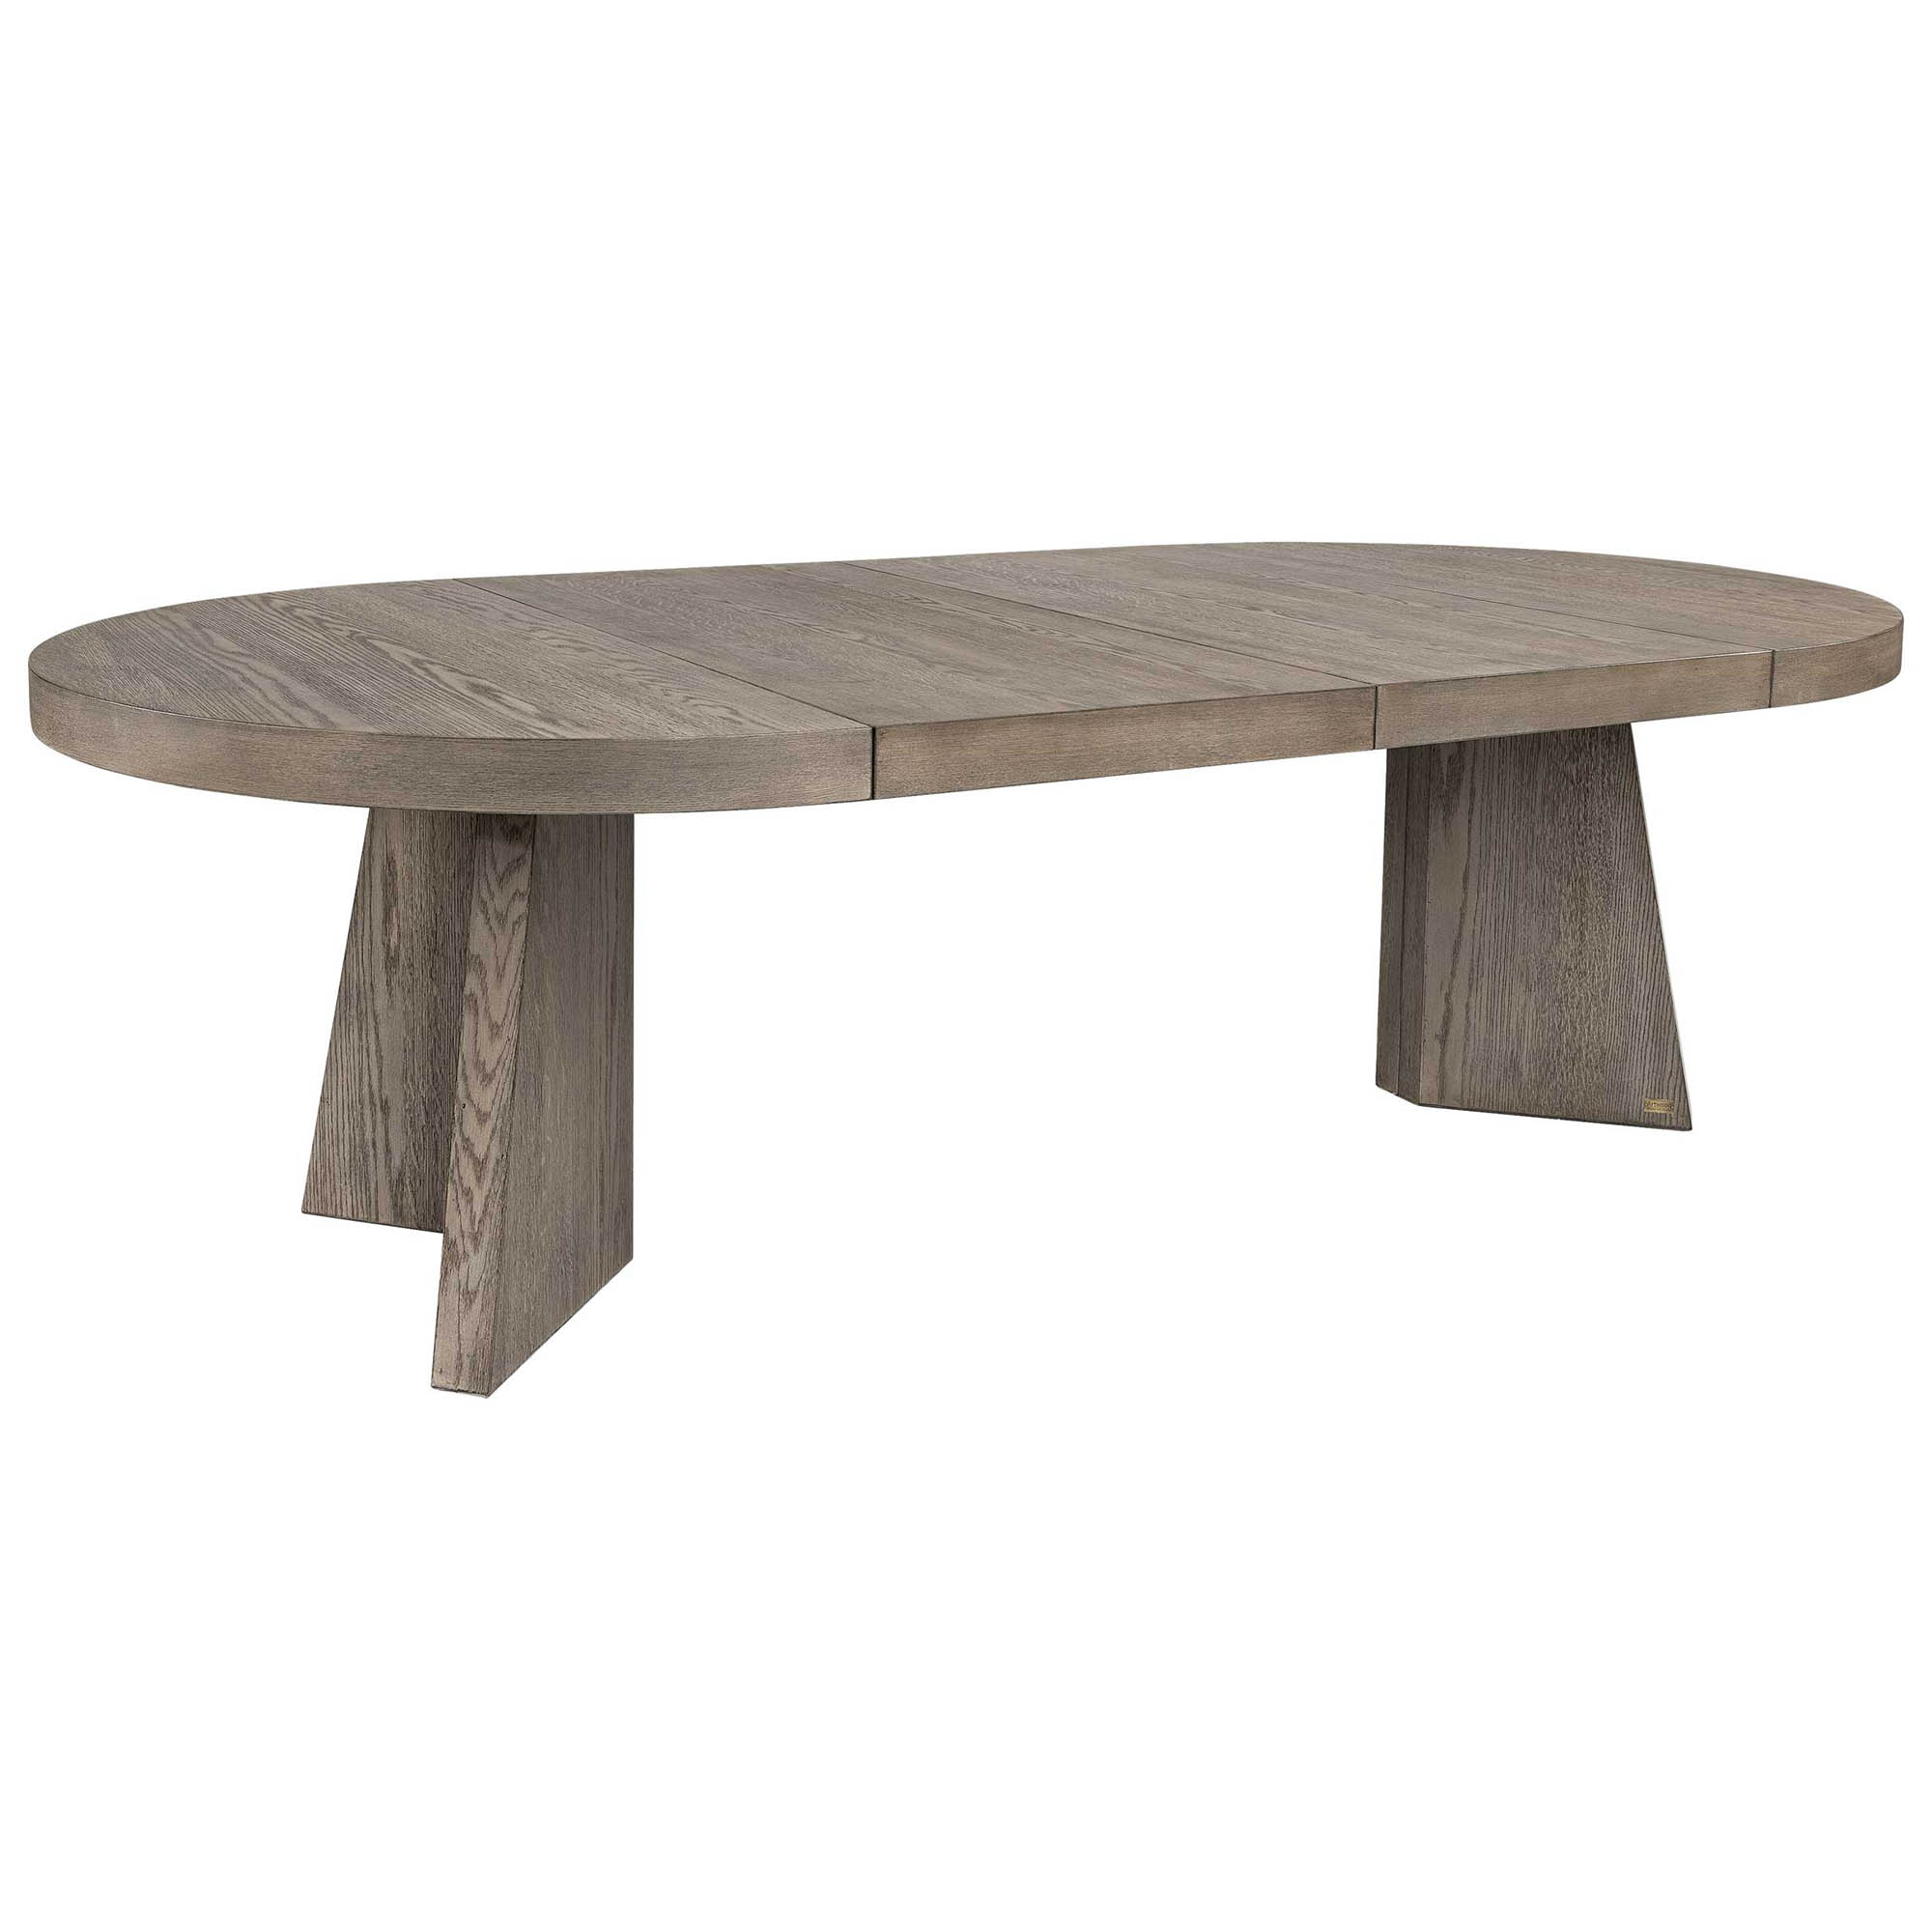 Trent förlängningsbart matbord antikgrå 130-250x130 cm